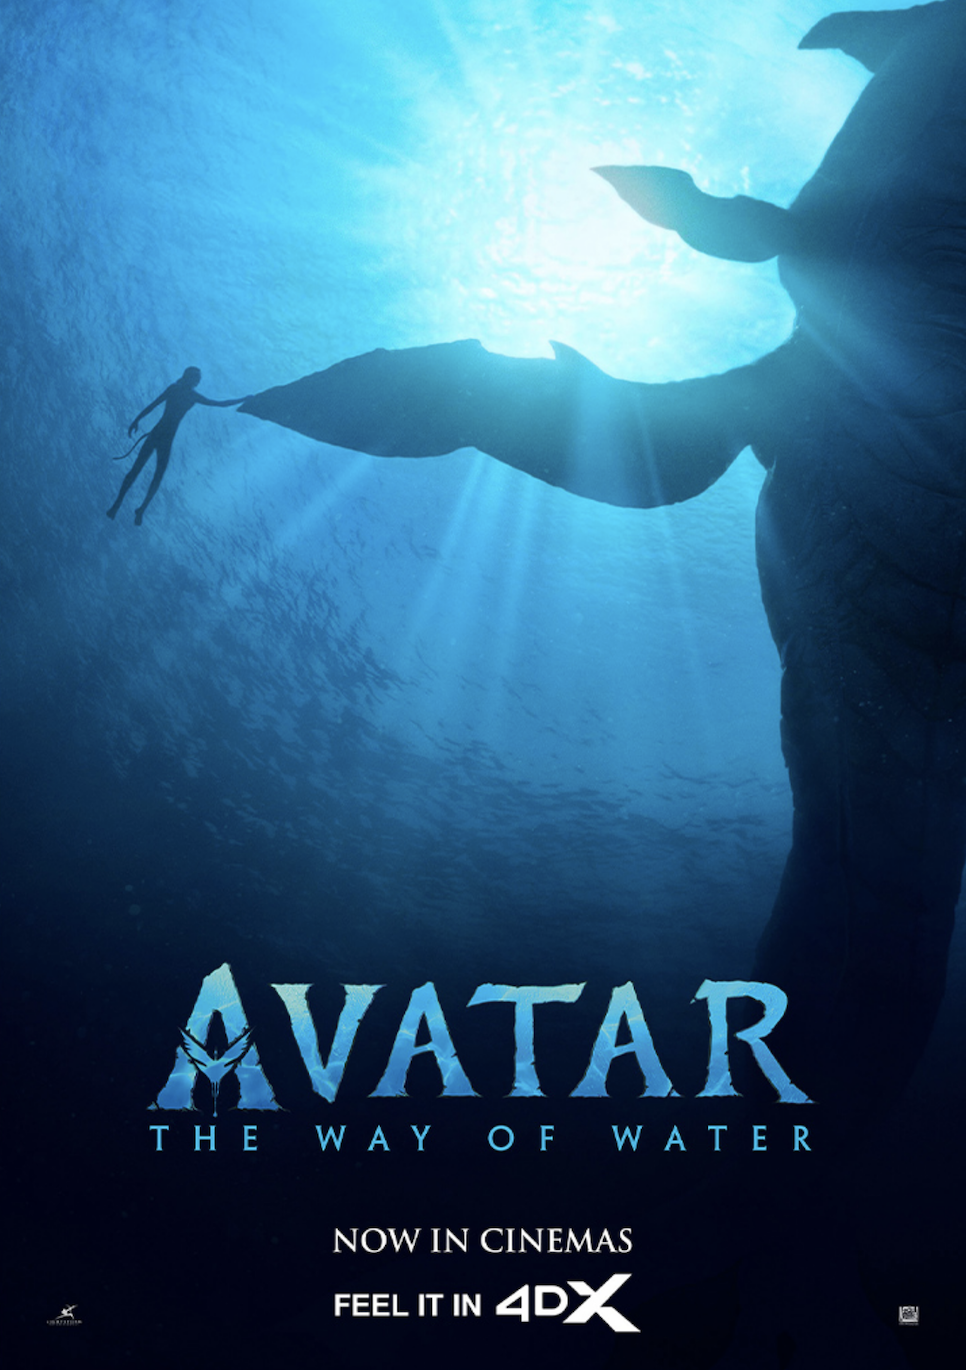 아바타 2 물의길 평점 아이맥스 4d 특전 포스터 콤보